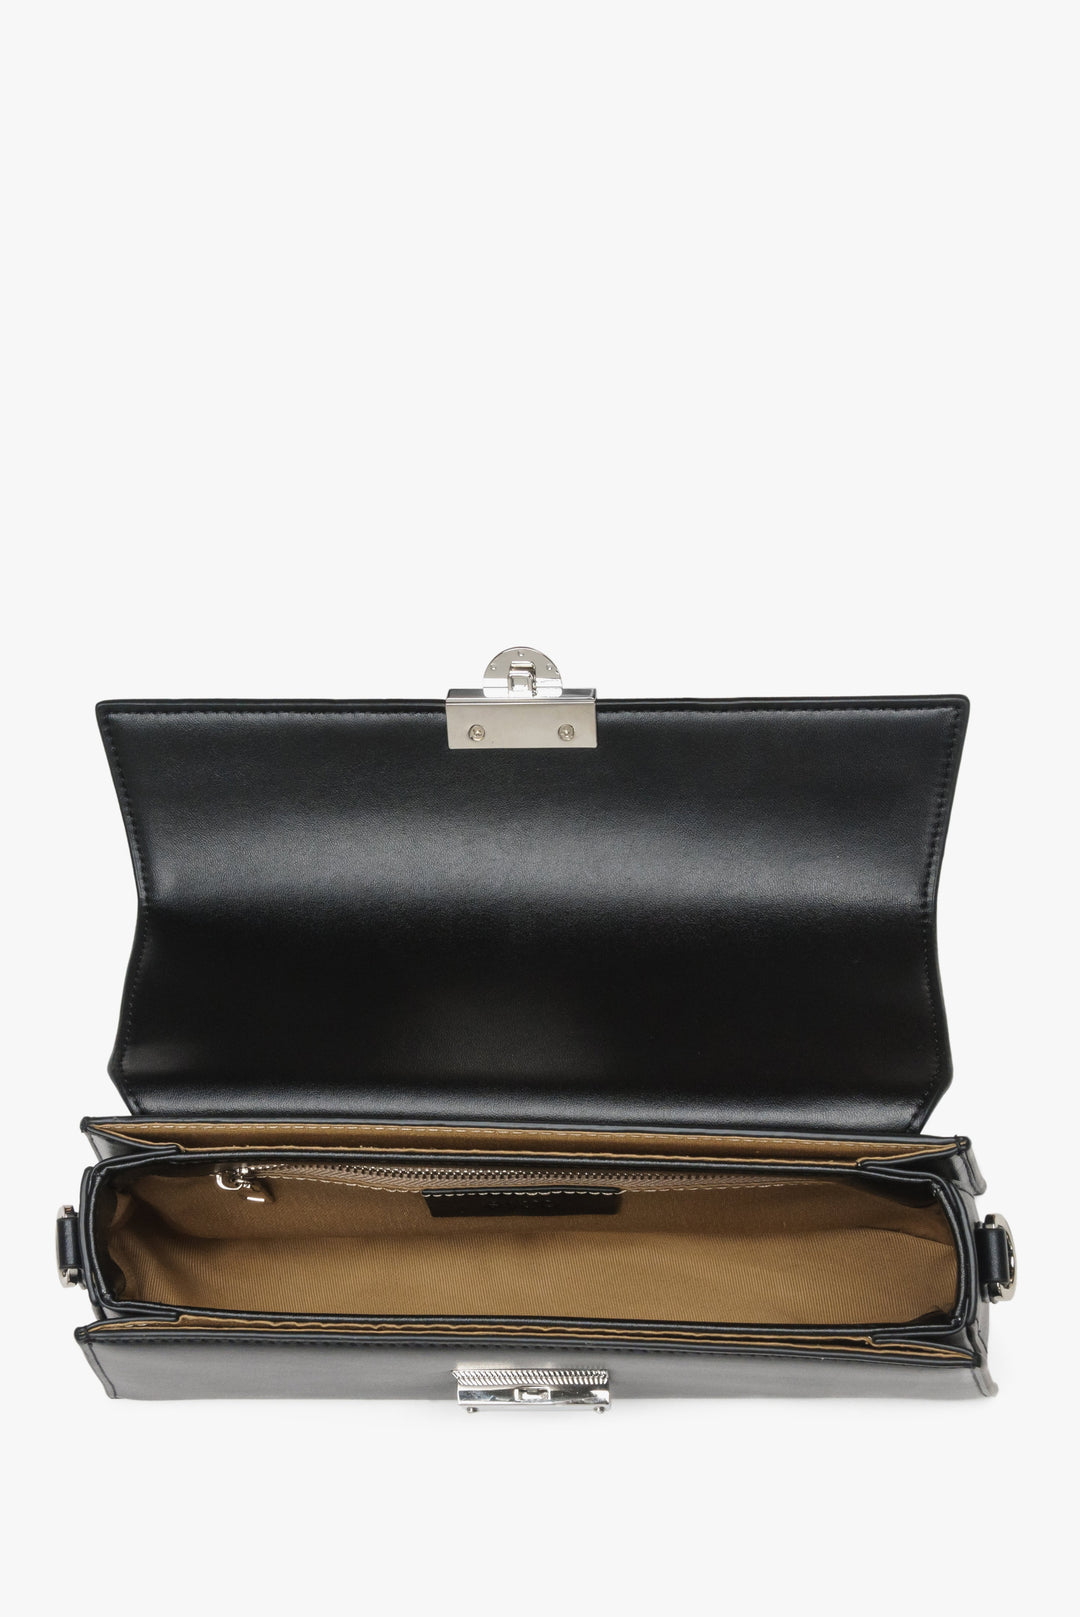 Women's black, leather handbag by Estro - interior view.